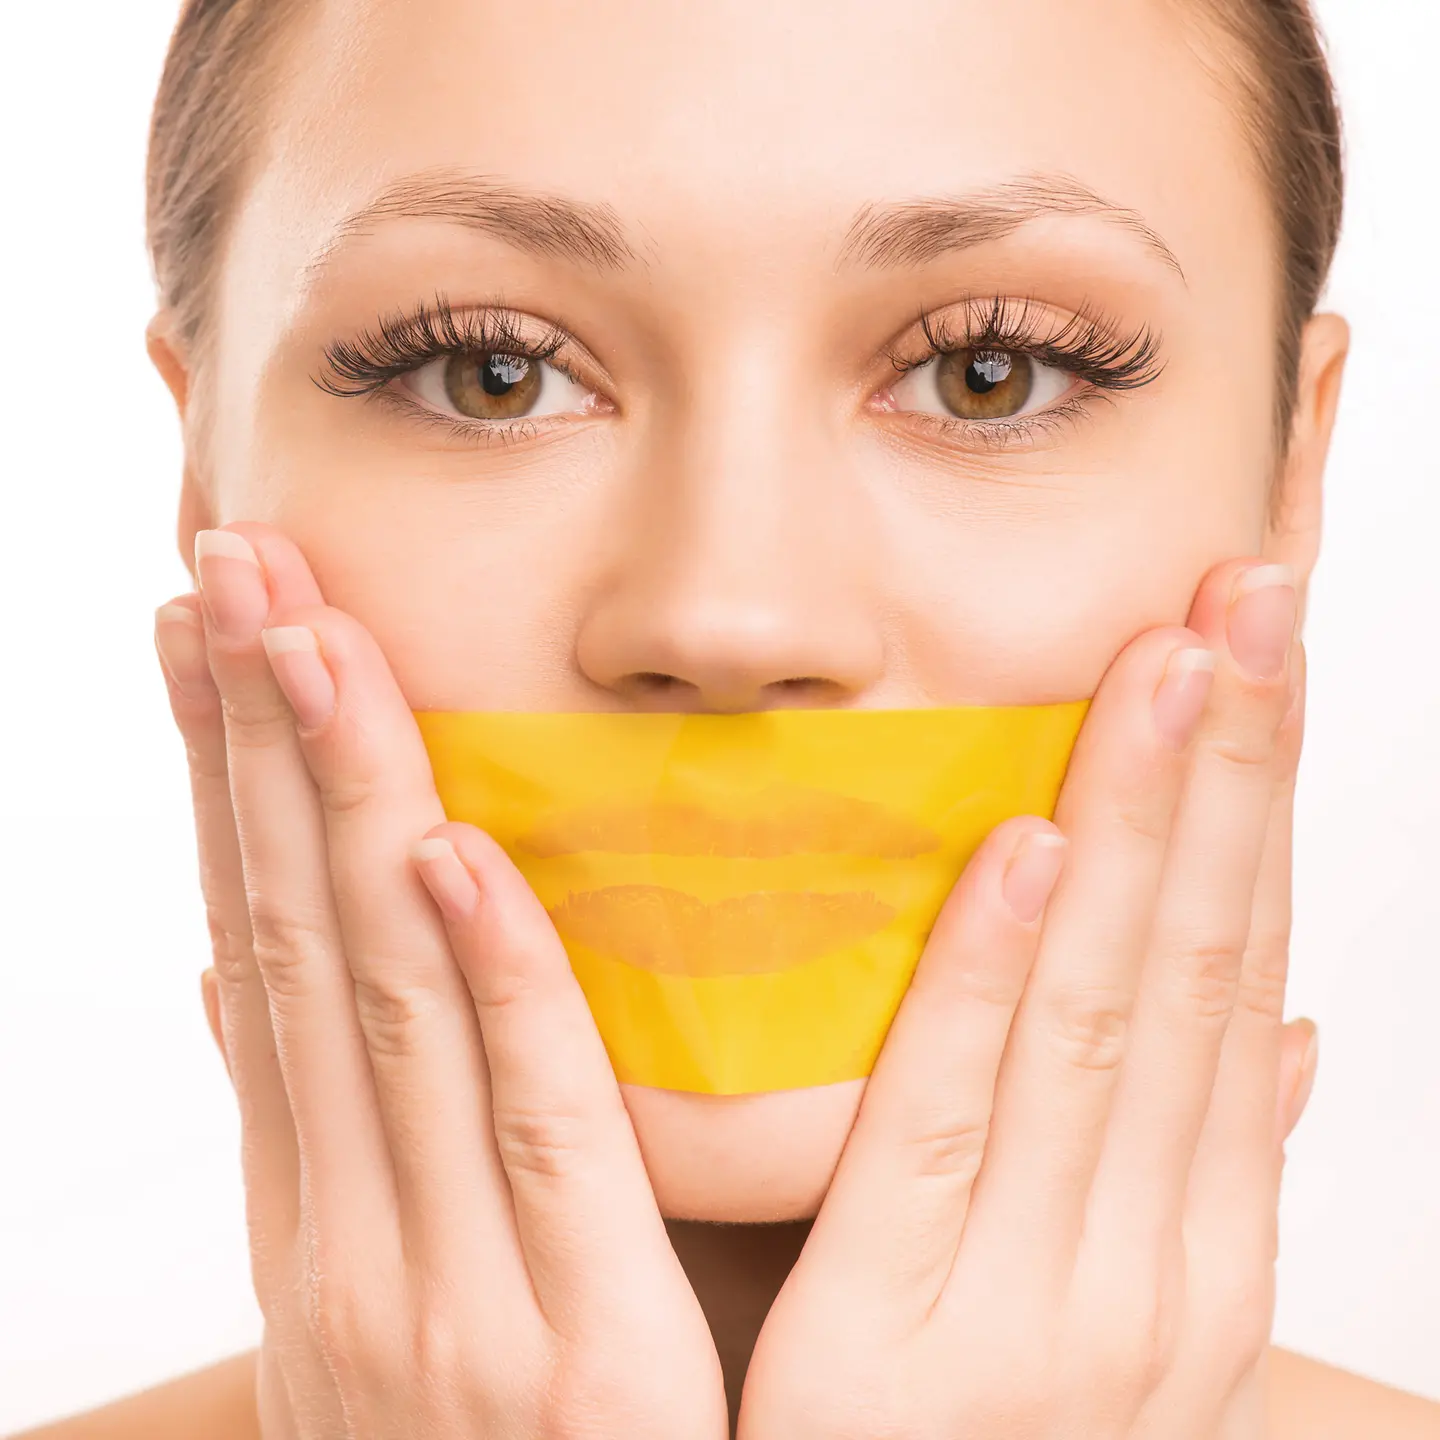 Zu sehen ist eine Frau, die sich den Mund mit einem gelben Klebeband zugeklebt hat